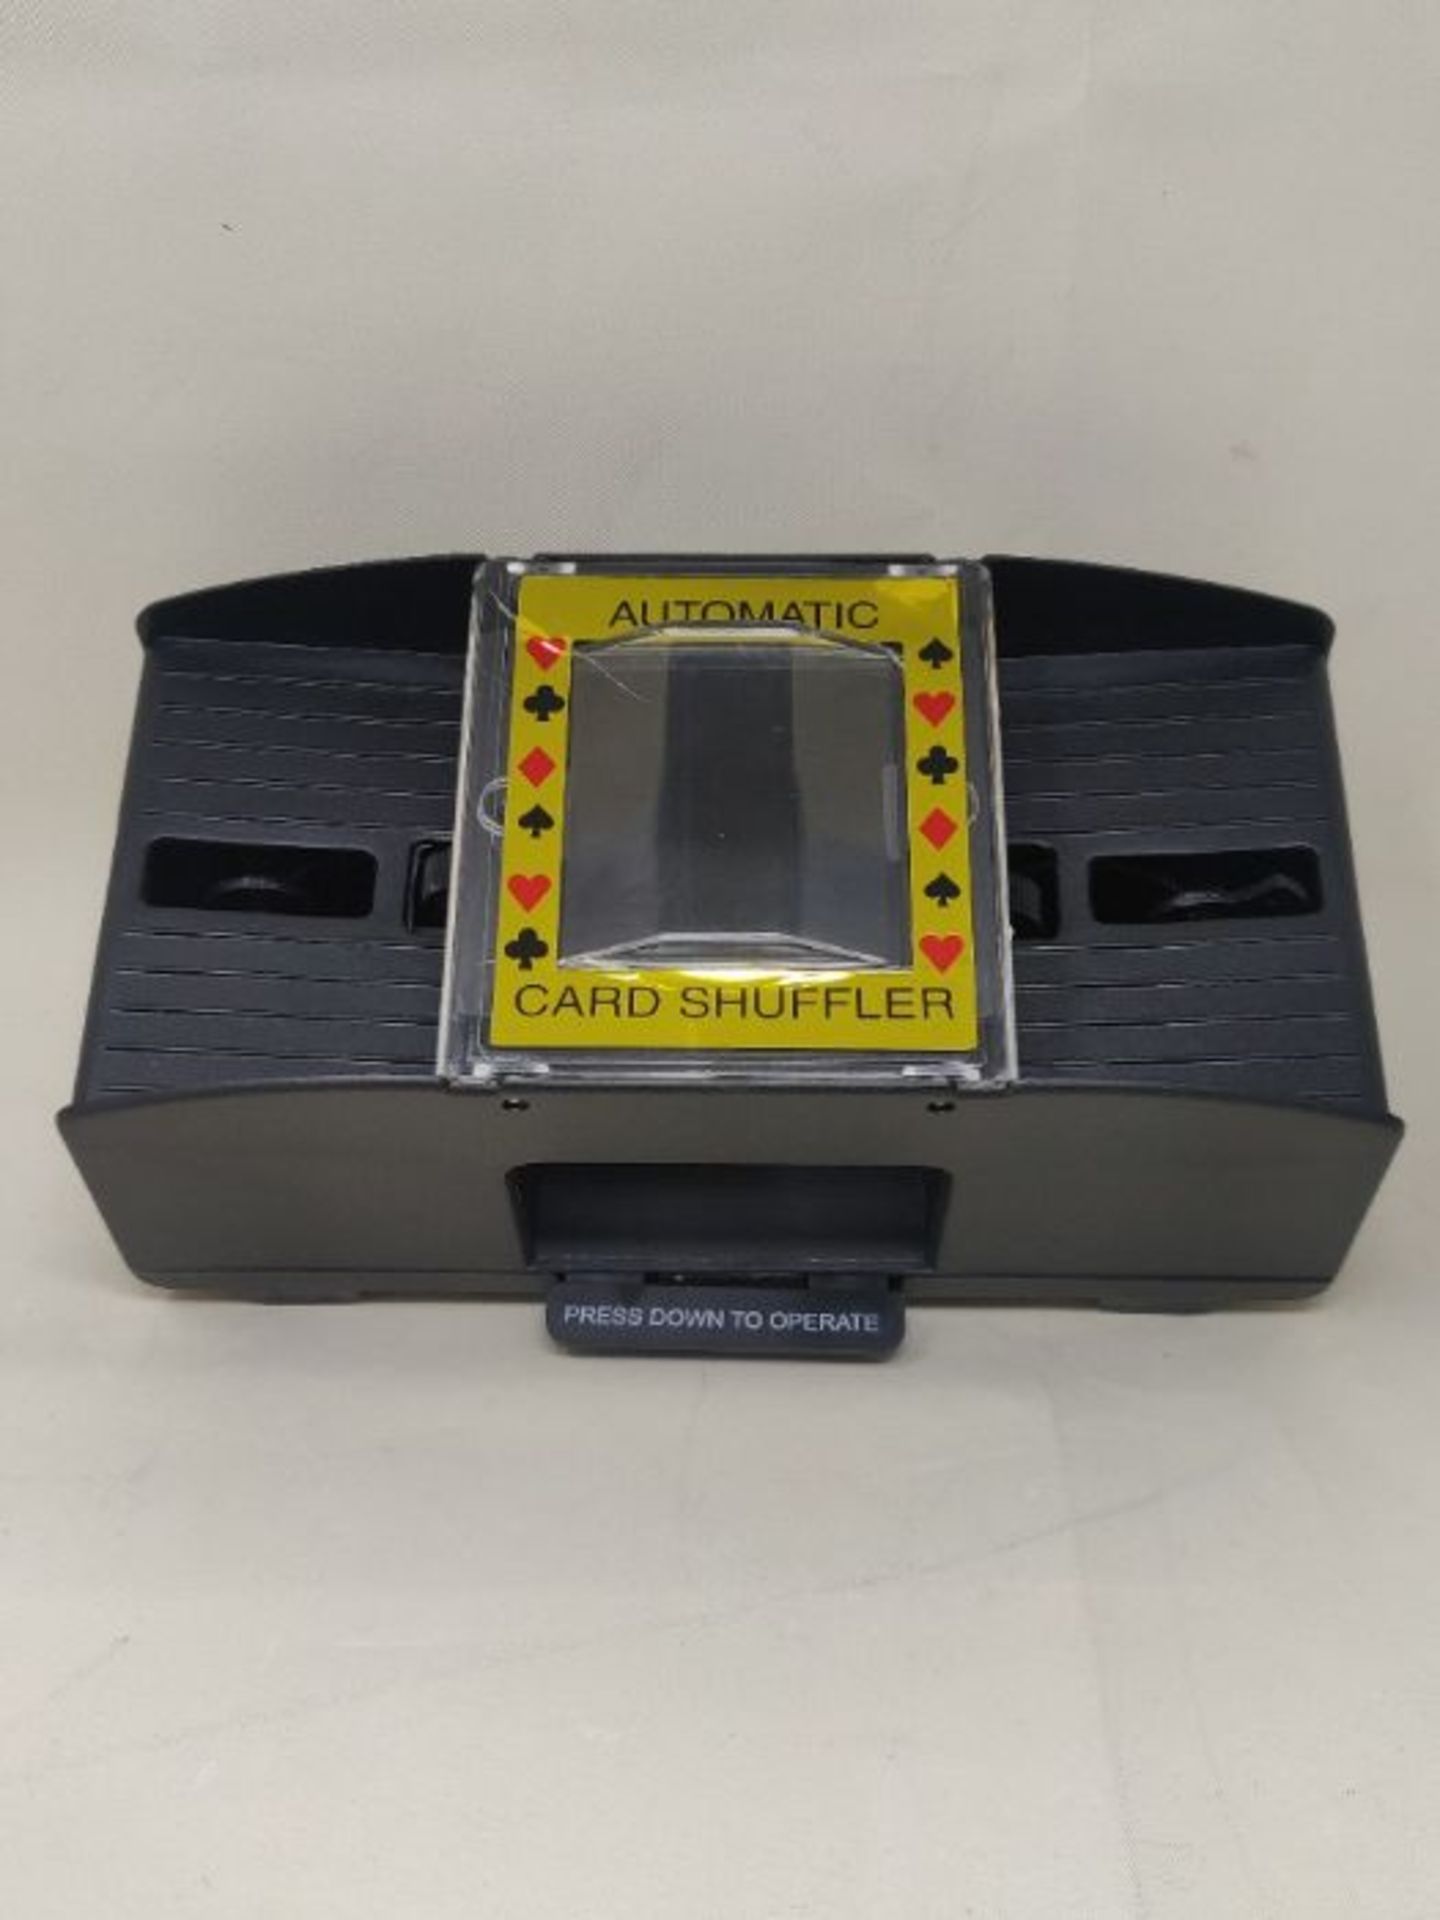 Relaxdays Card Shuffler 2 Decks Electronic Mixing Machine to Shuffle Playing Cards Bat - Image 3 of 3